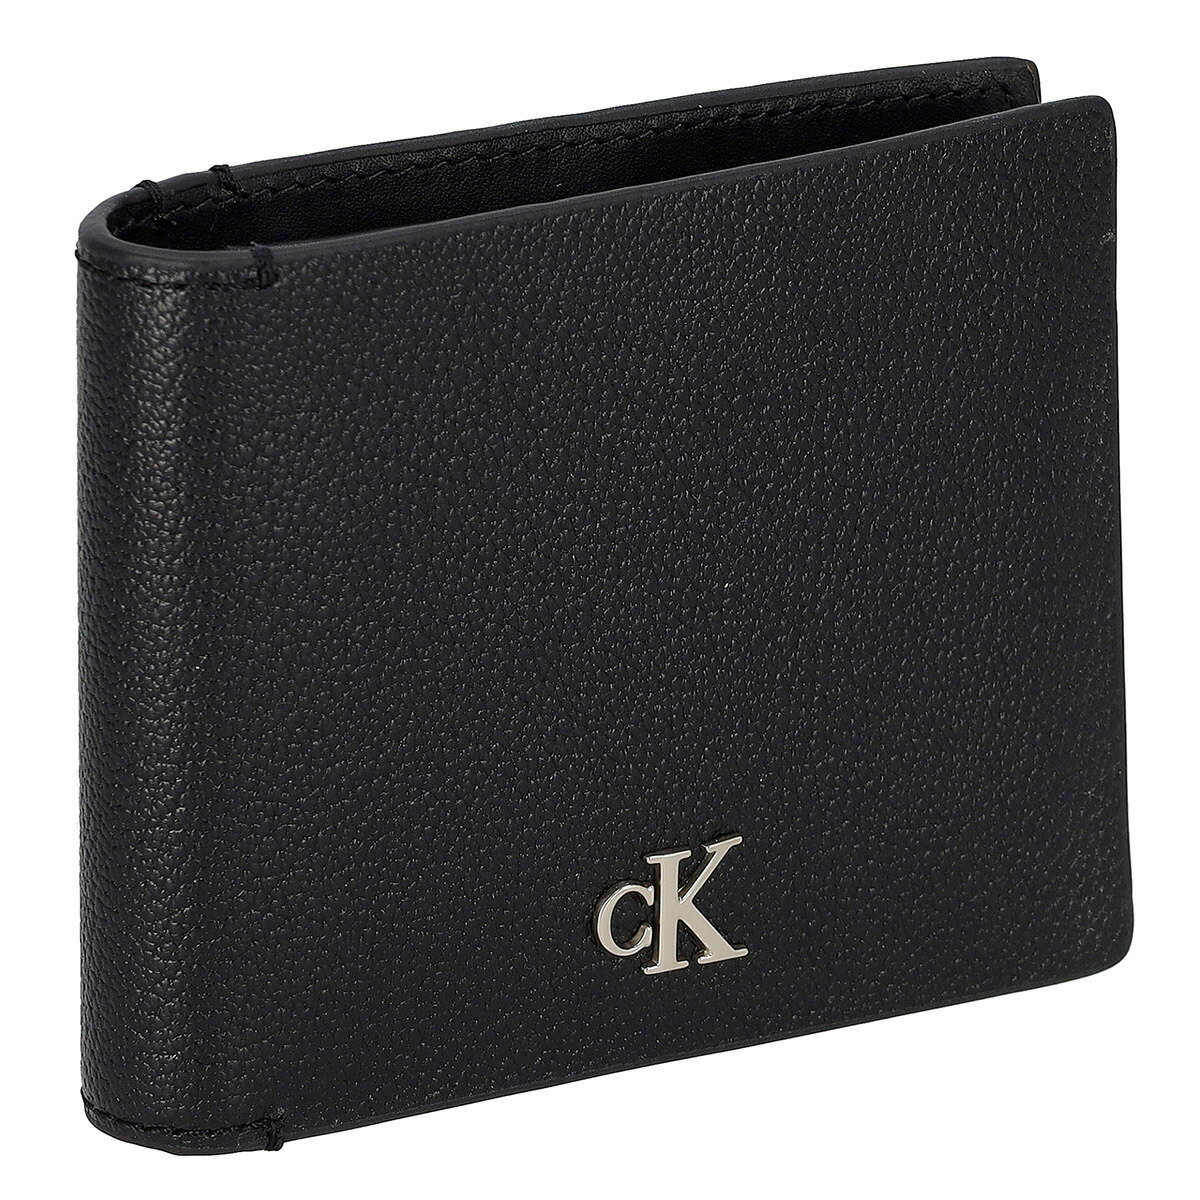 カルバンクライン ジーンズ Calvin Klein Jeans CK 財布 二つ折り財布 折りたたみ財布 K50K511091 BDS メンズ ブラック